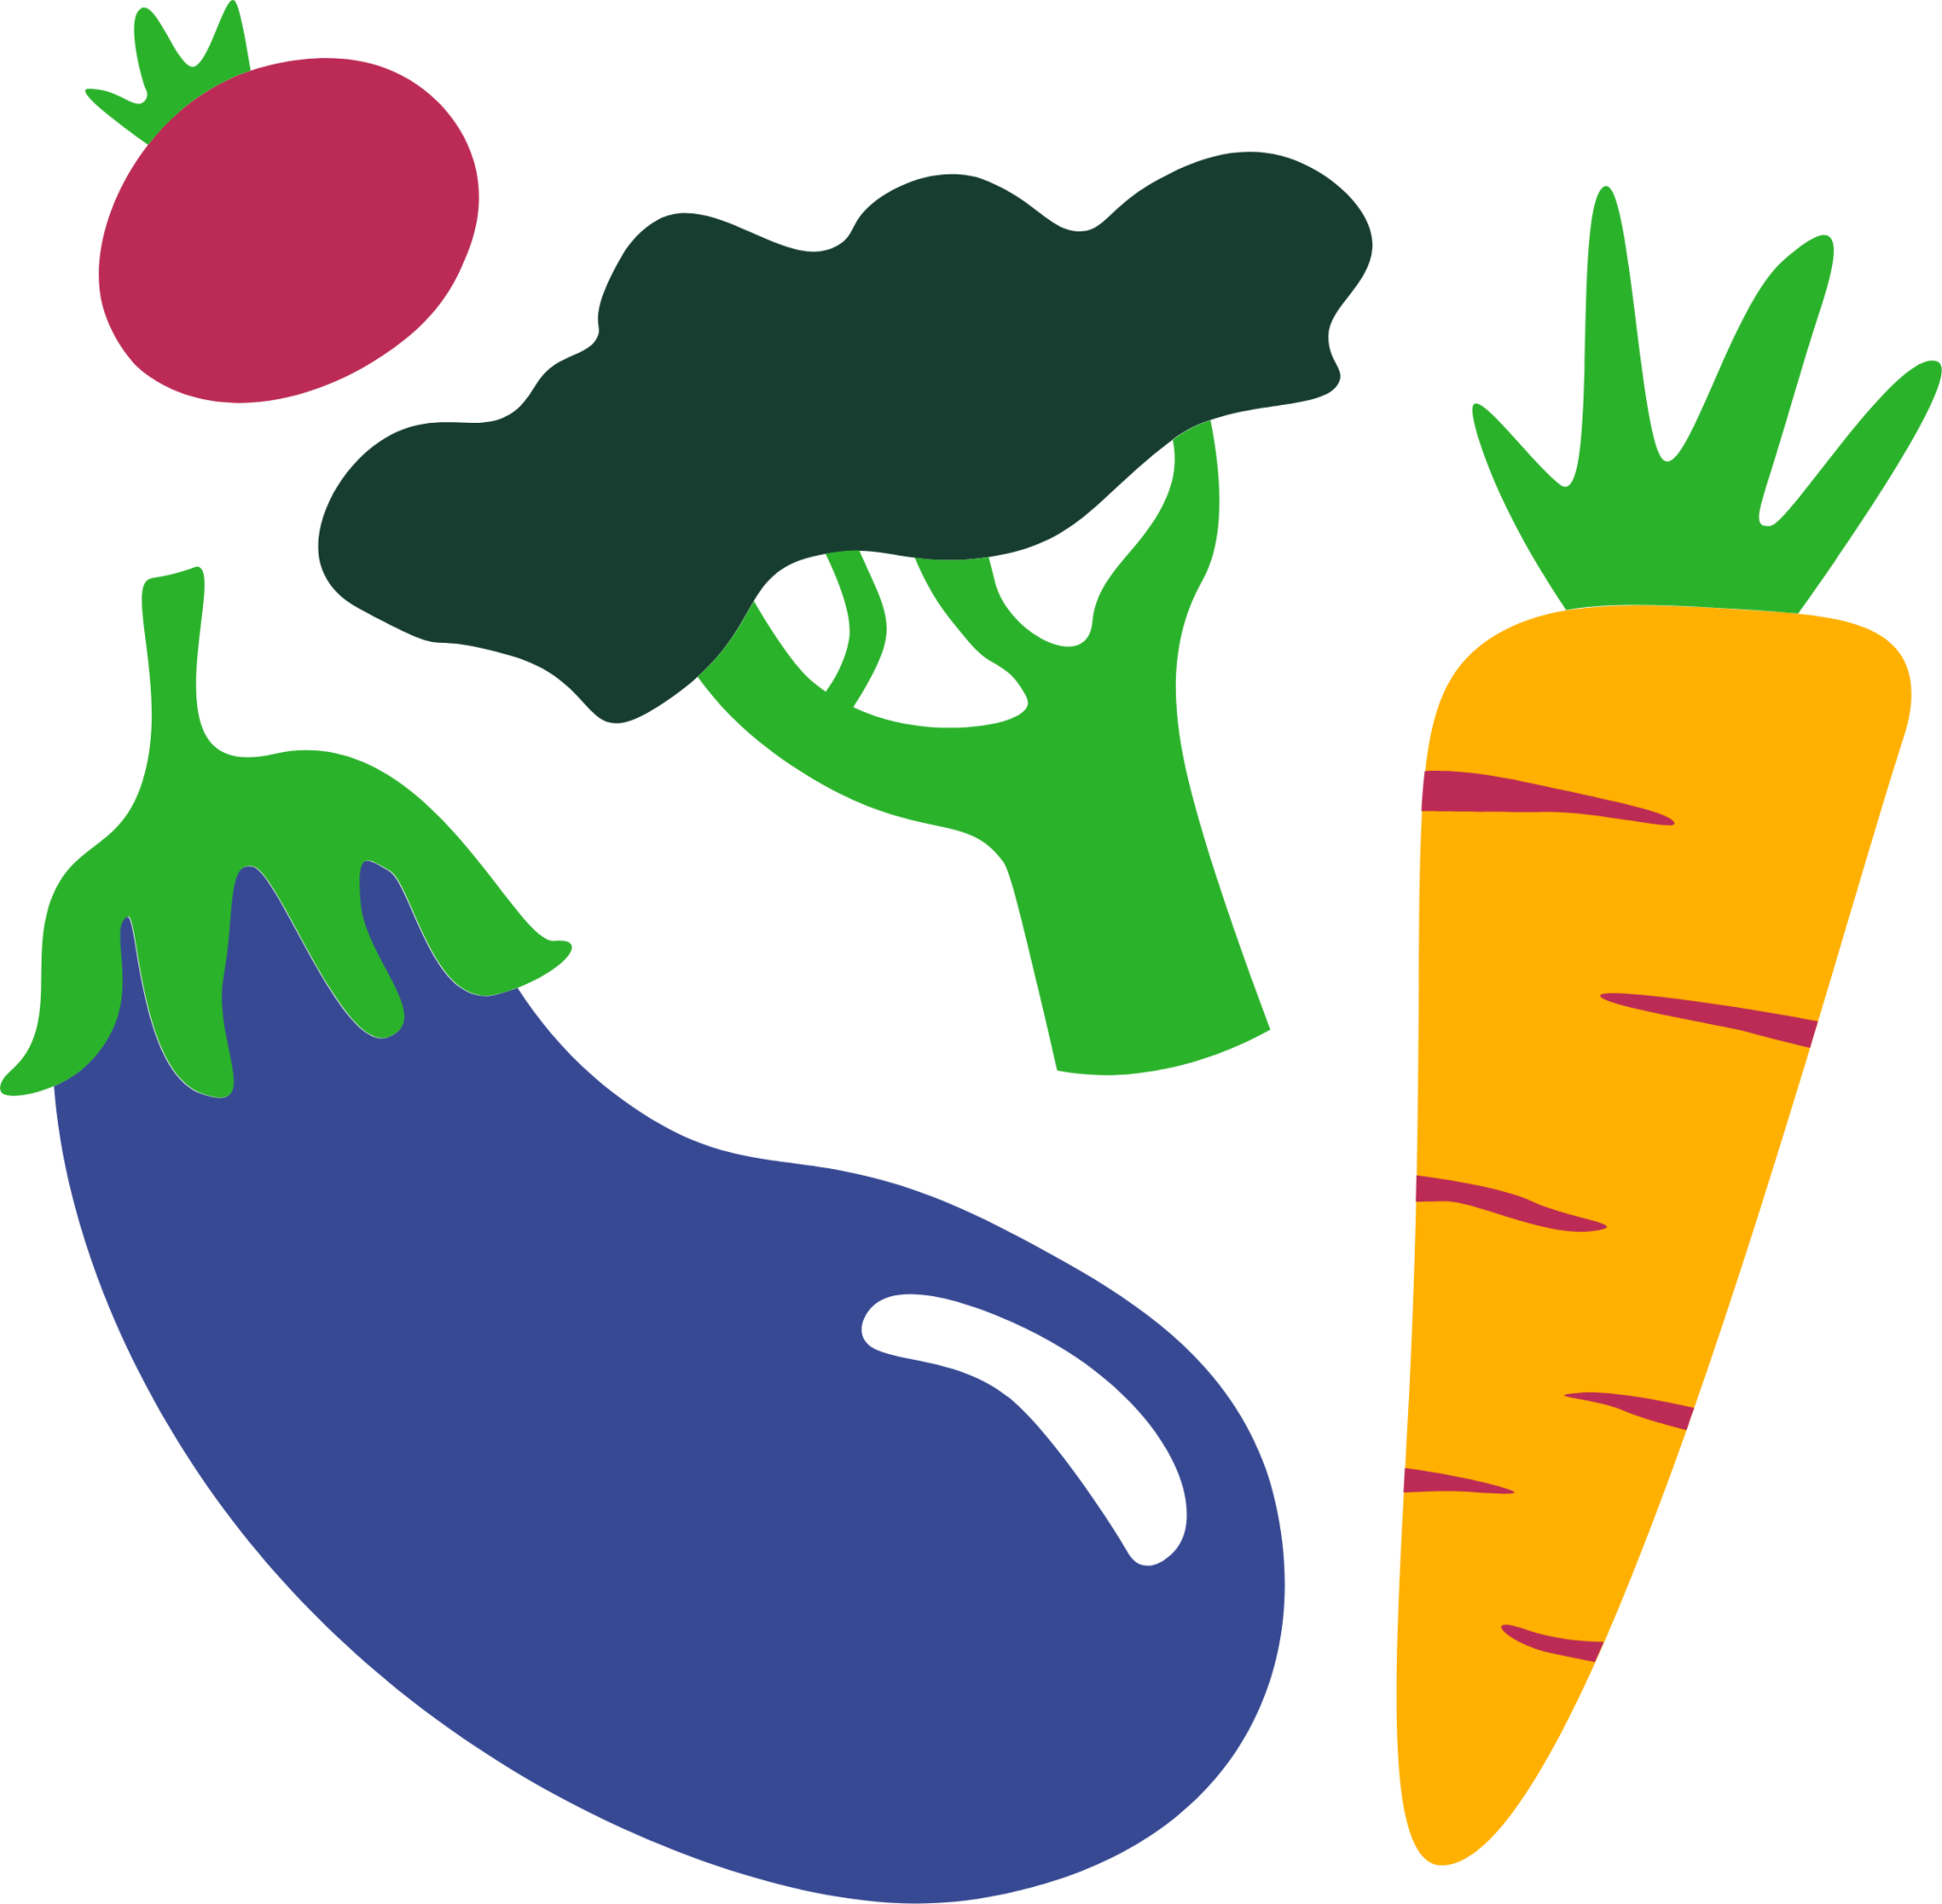 vegetables illustration